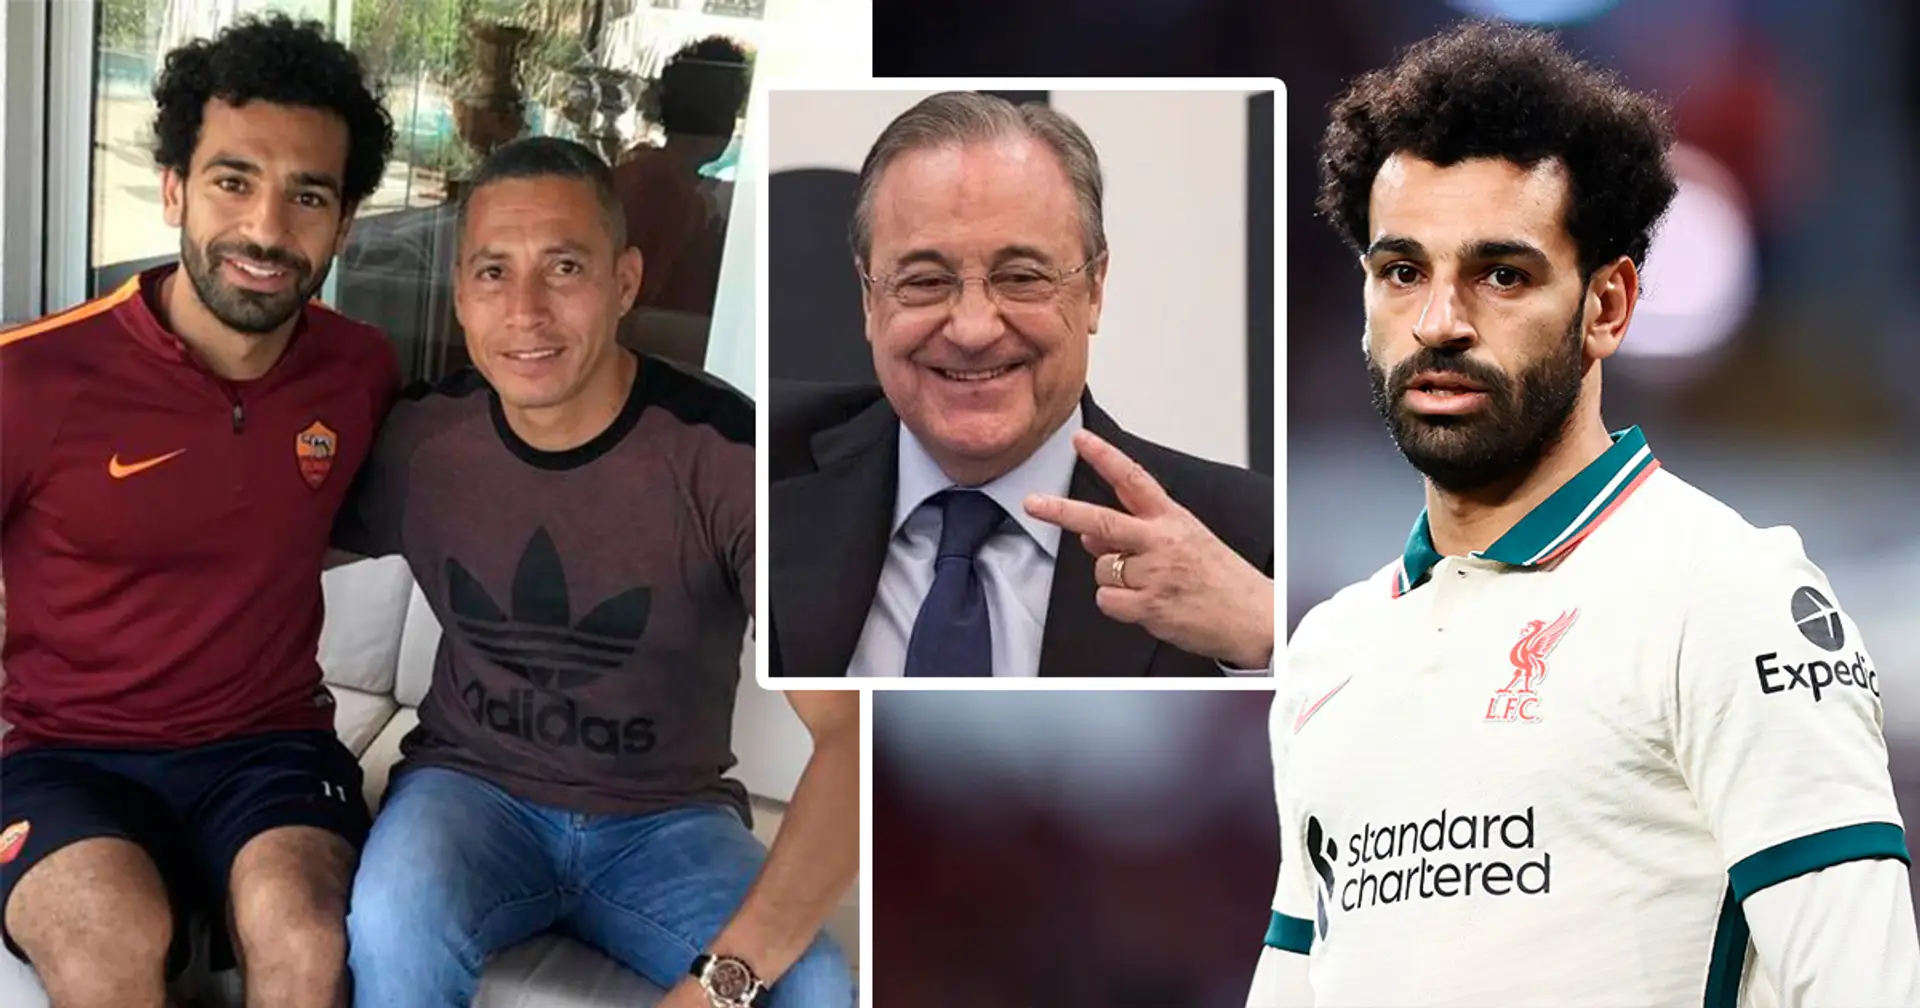 "Son rêve est de rejoindre Madrid": l'entraîneur personnel de Salah révèle la réaction de l'Egyptien lorsqu'on lui a demandé de rejoindre Barcelone